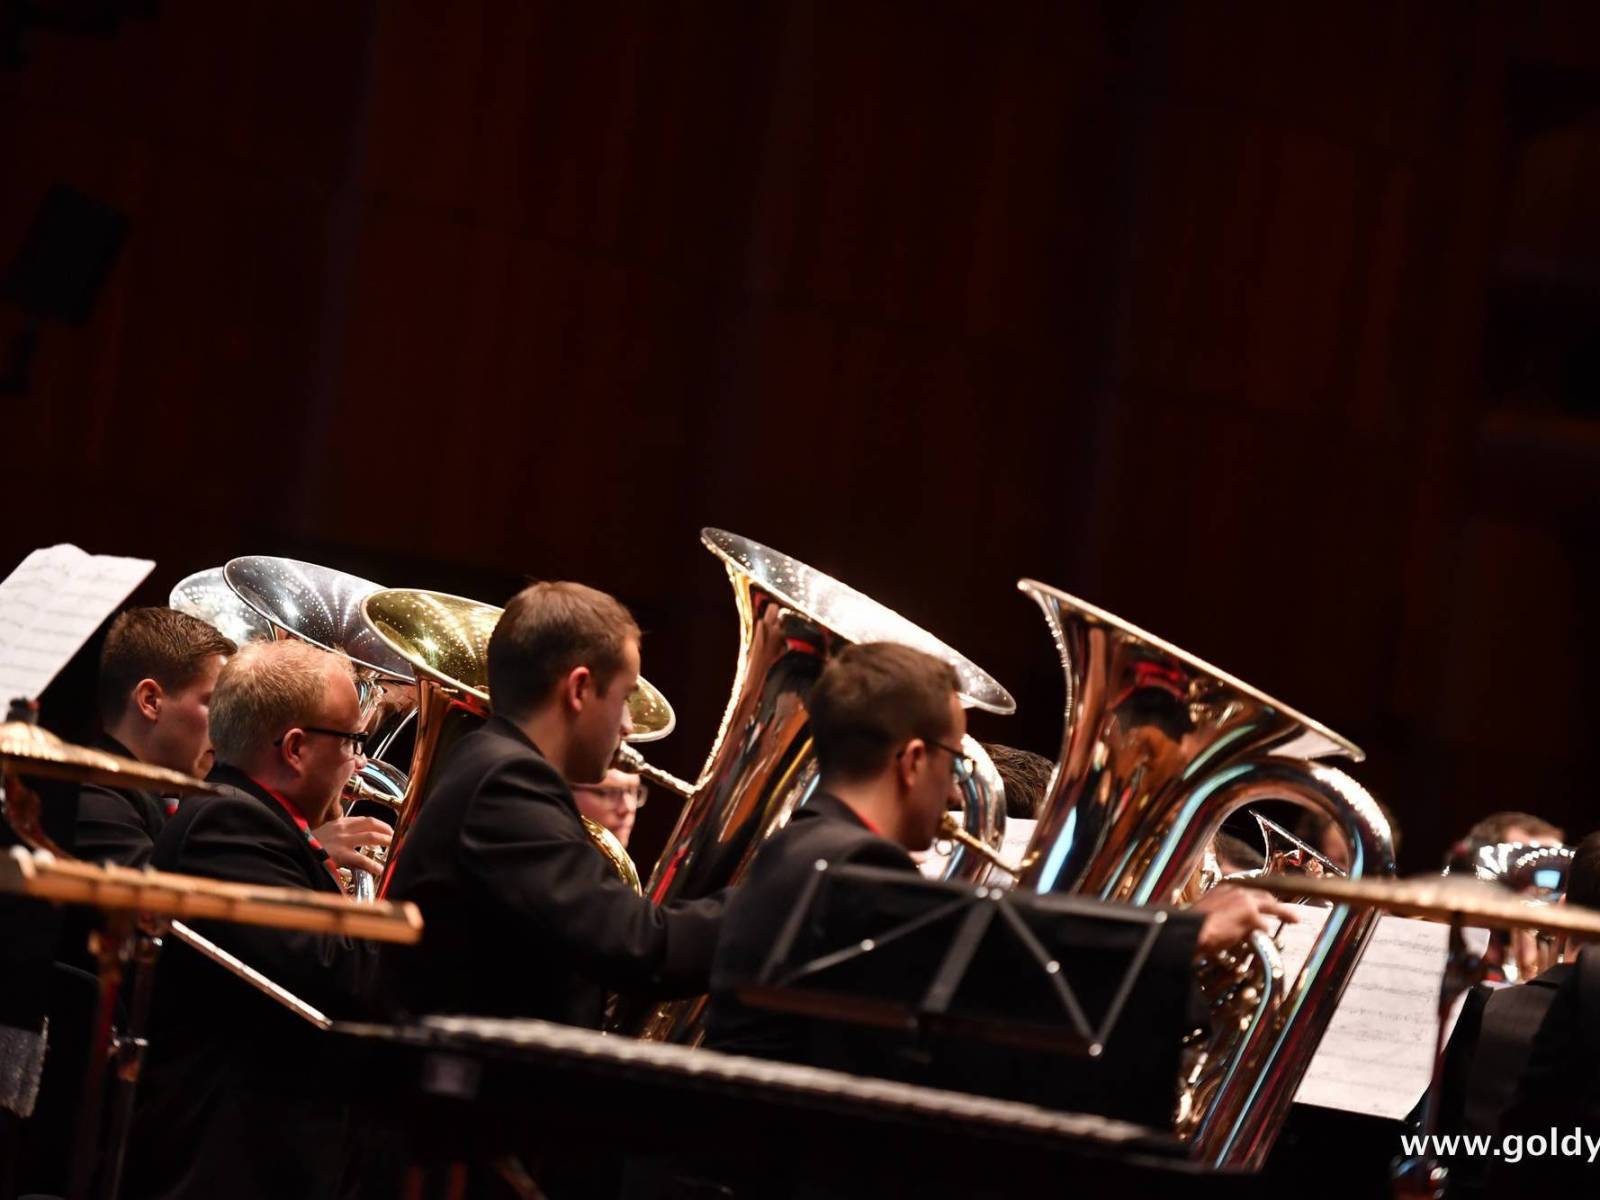 Swiss Brass Band Association - 19 and 20 november